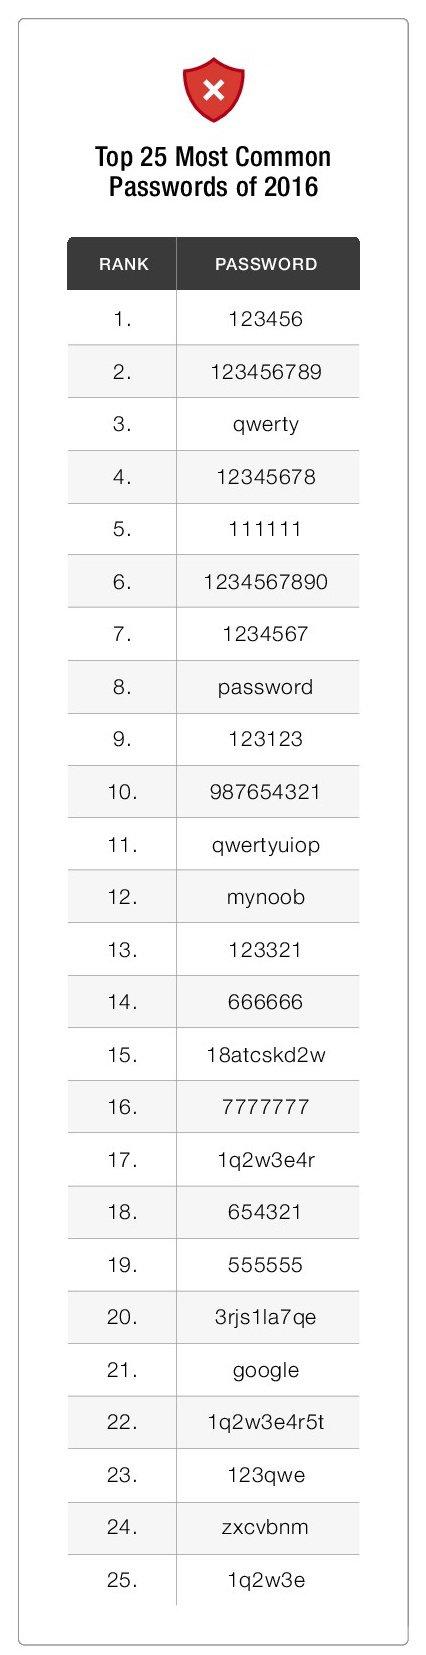 Топ-25 худших, но часто используемых, паролей 2016 года